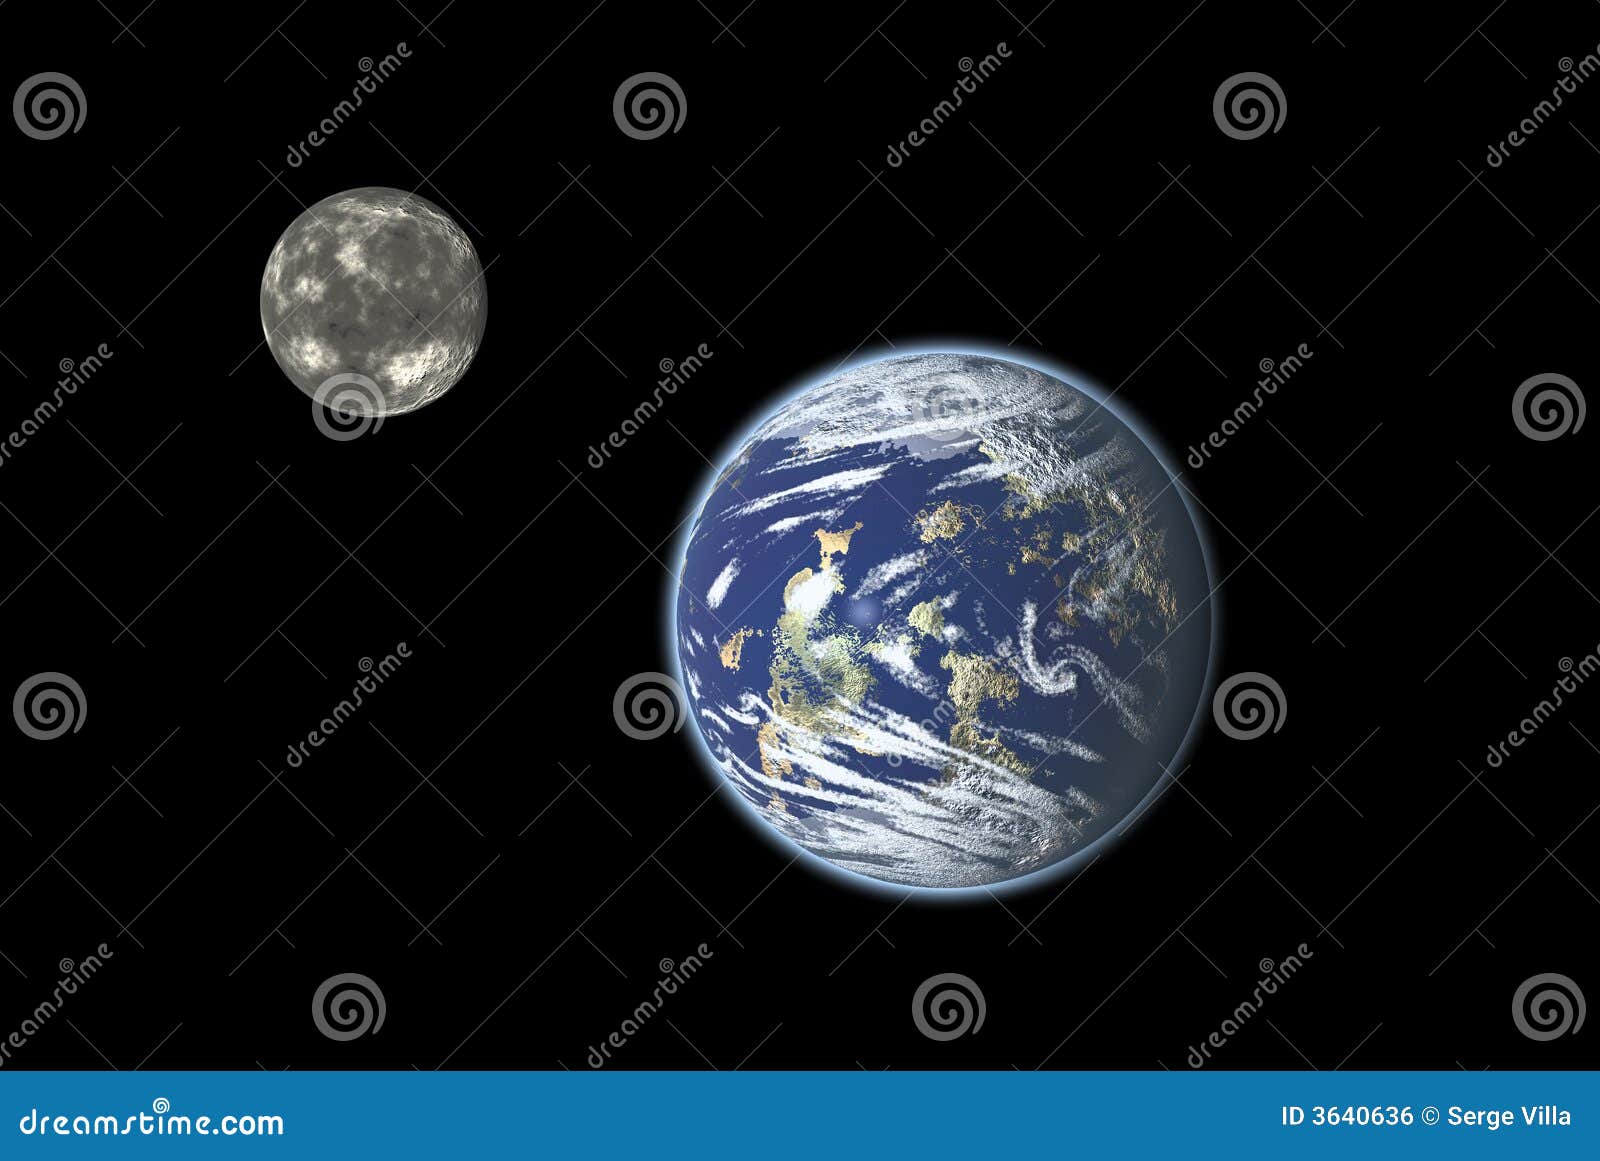 Erde und Mond. Erde- und Mondsystemsabbildung